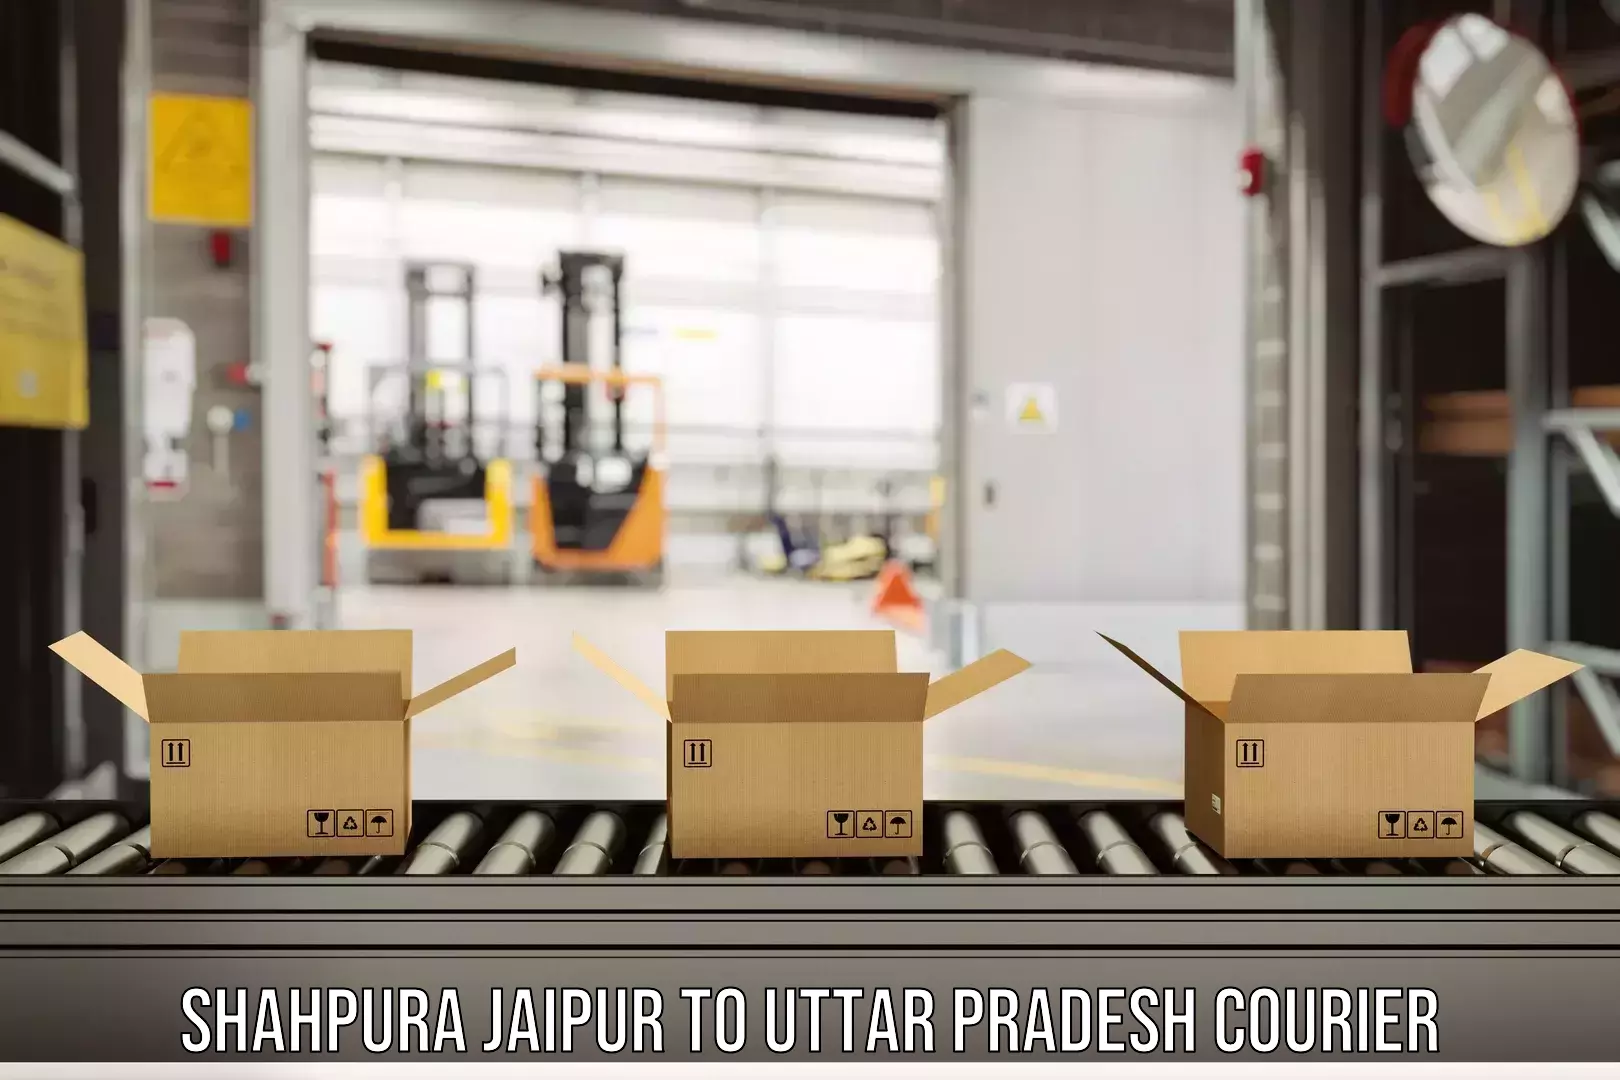 Advanced shipping technology Shahpura Jaipur to Kulpahar